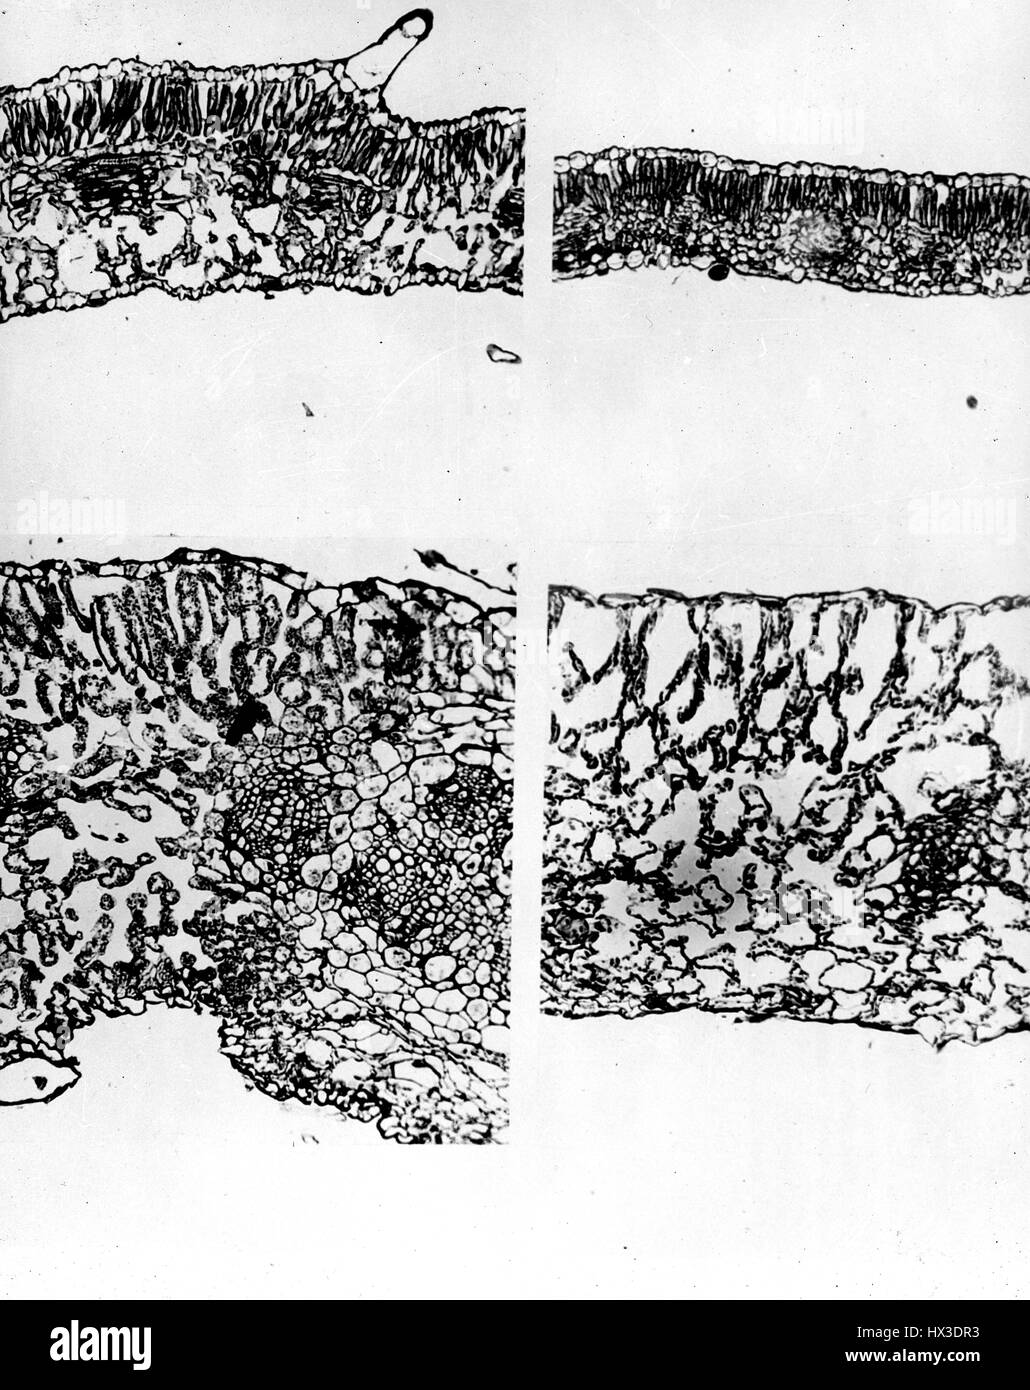 Sezioni trasversali di piante di tabacco con un microscopio che mostra l'effetto di radiazioni nucleari, a Brookhaven National Laboratory di Upton, New York, 1955. Immagine cortesia del Dipartimento Americano di Energia. Foto Stock